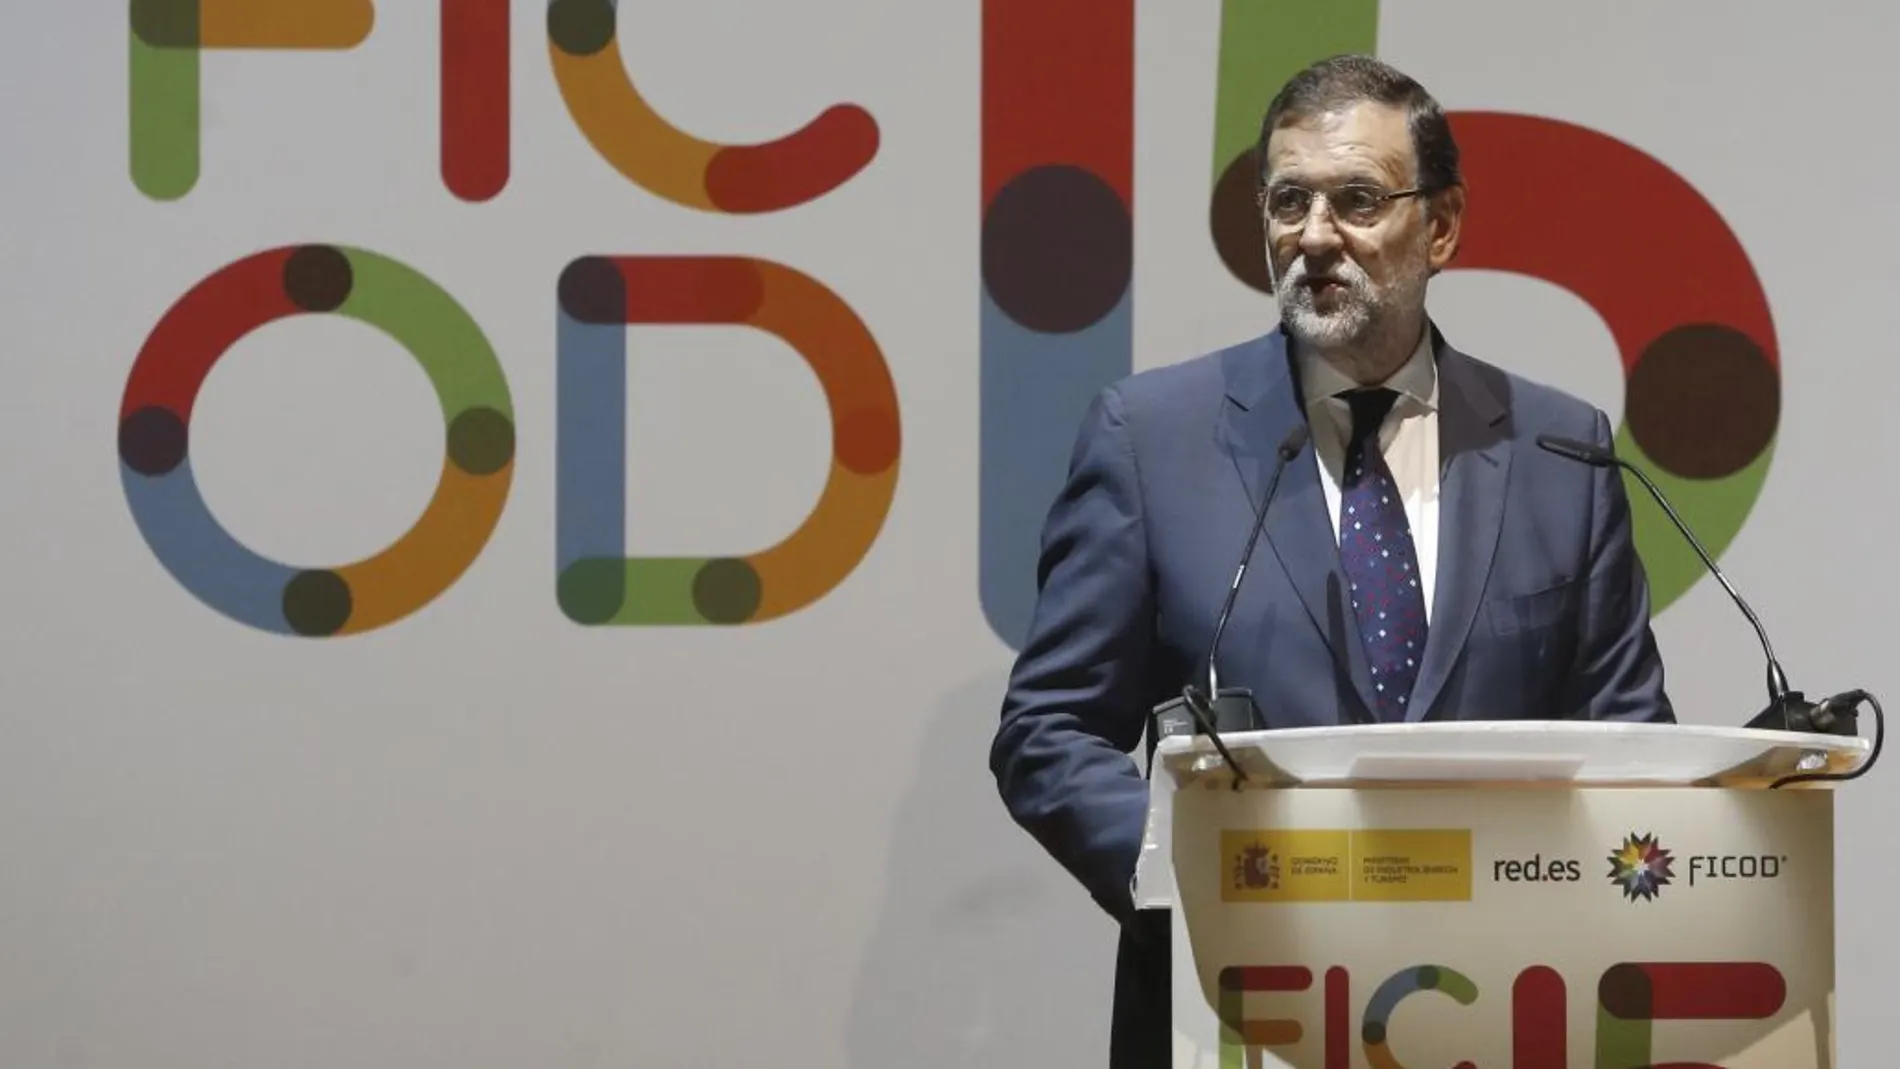 El presidente del Gobierno, Mariano Rajoy, durante su intervención en la inauguración del Foro Internacional de Contenidos Digitales (Ficod).